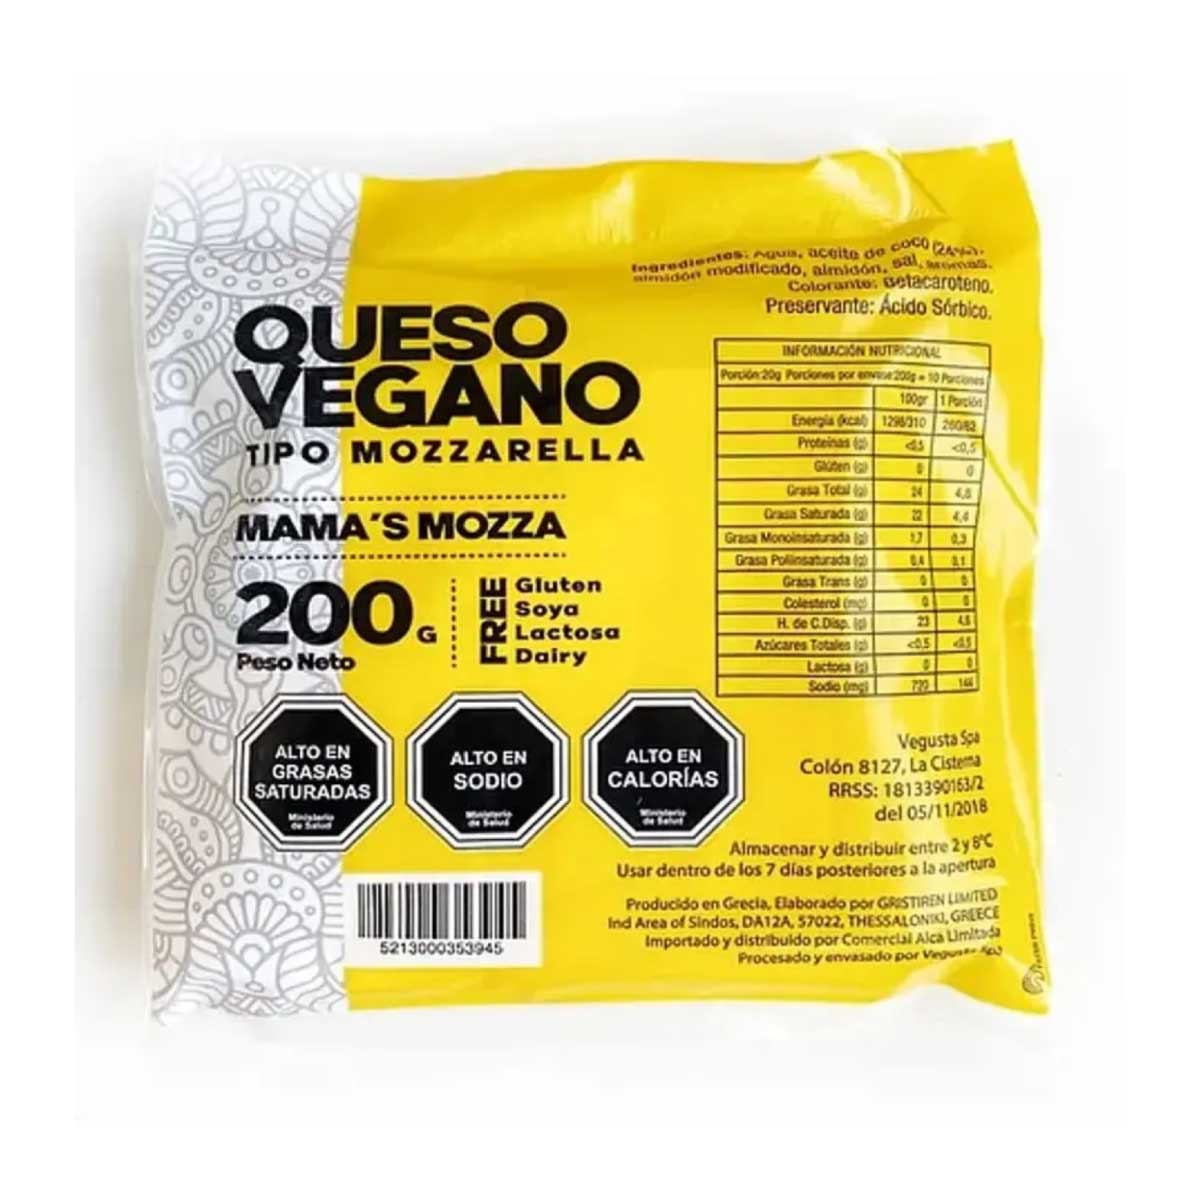 Queso Vegano Mozzarella 250g - mama's mozza